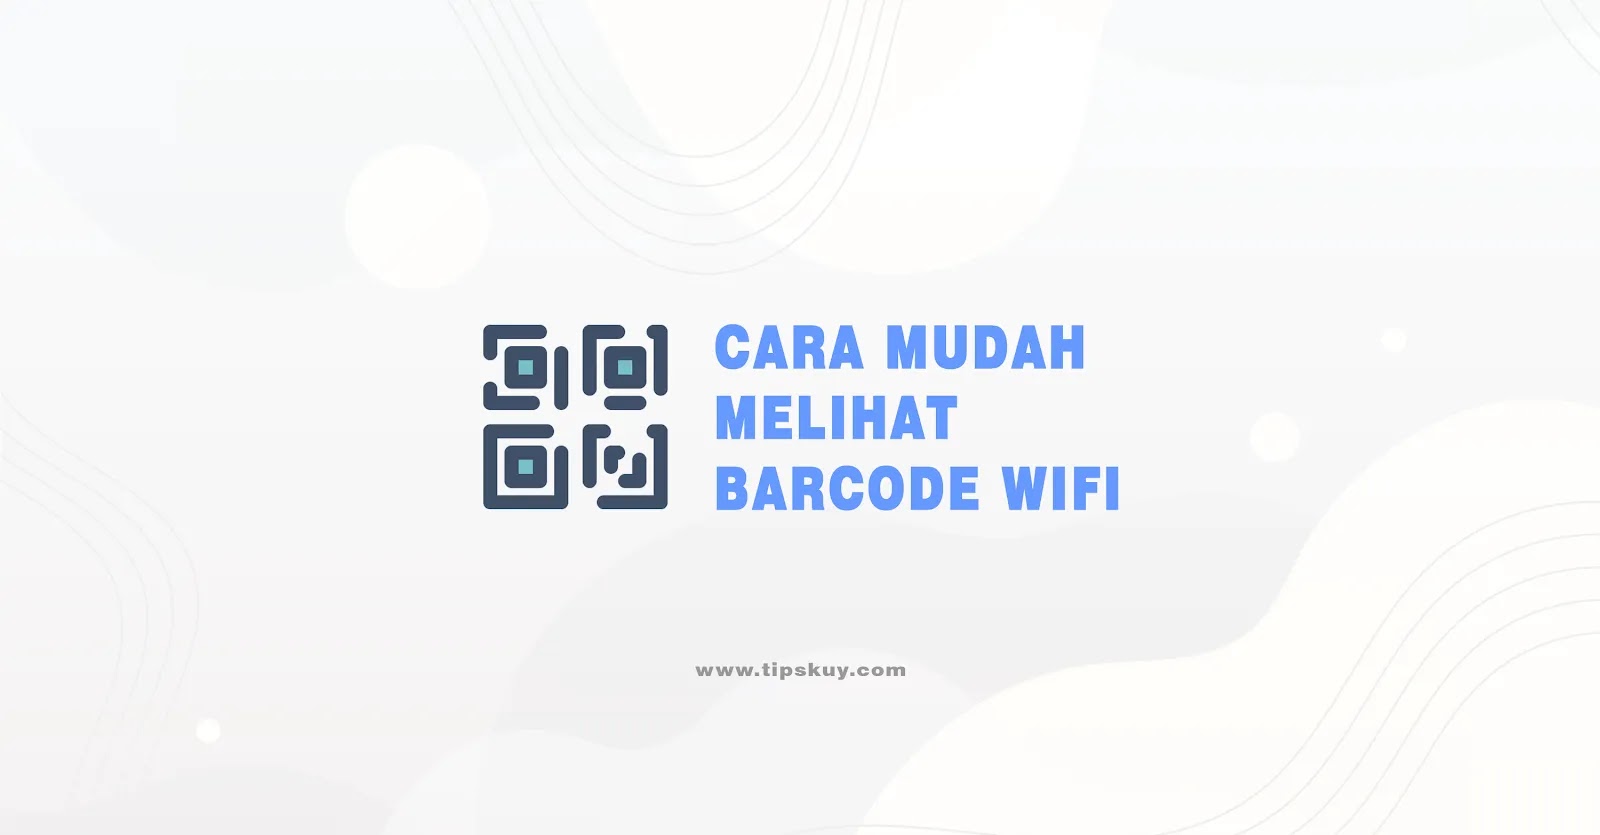 Cara Mudah Melihat Barcode WiFi